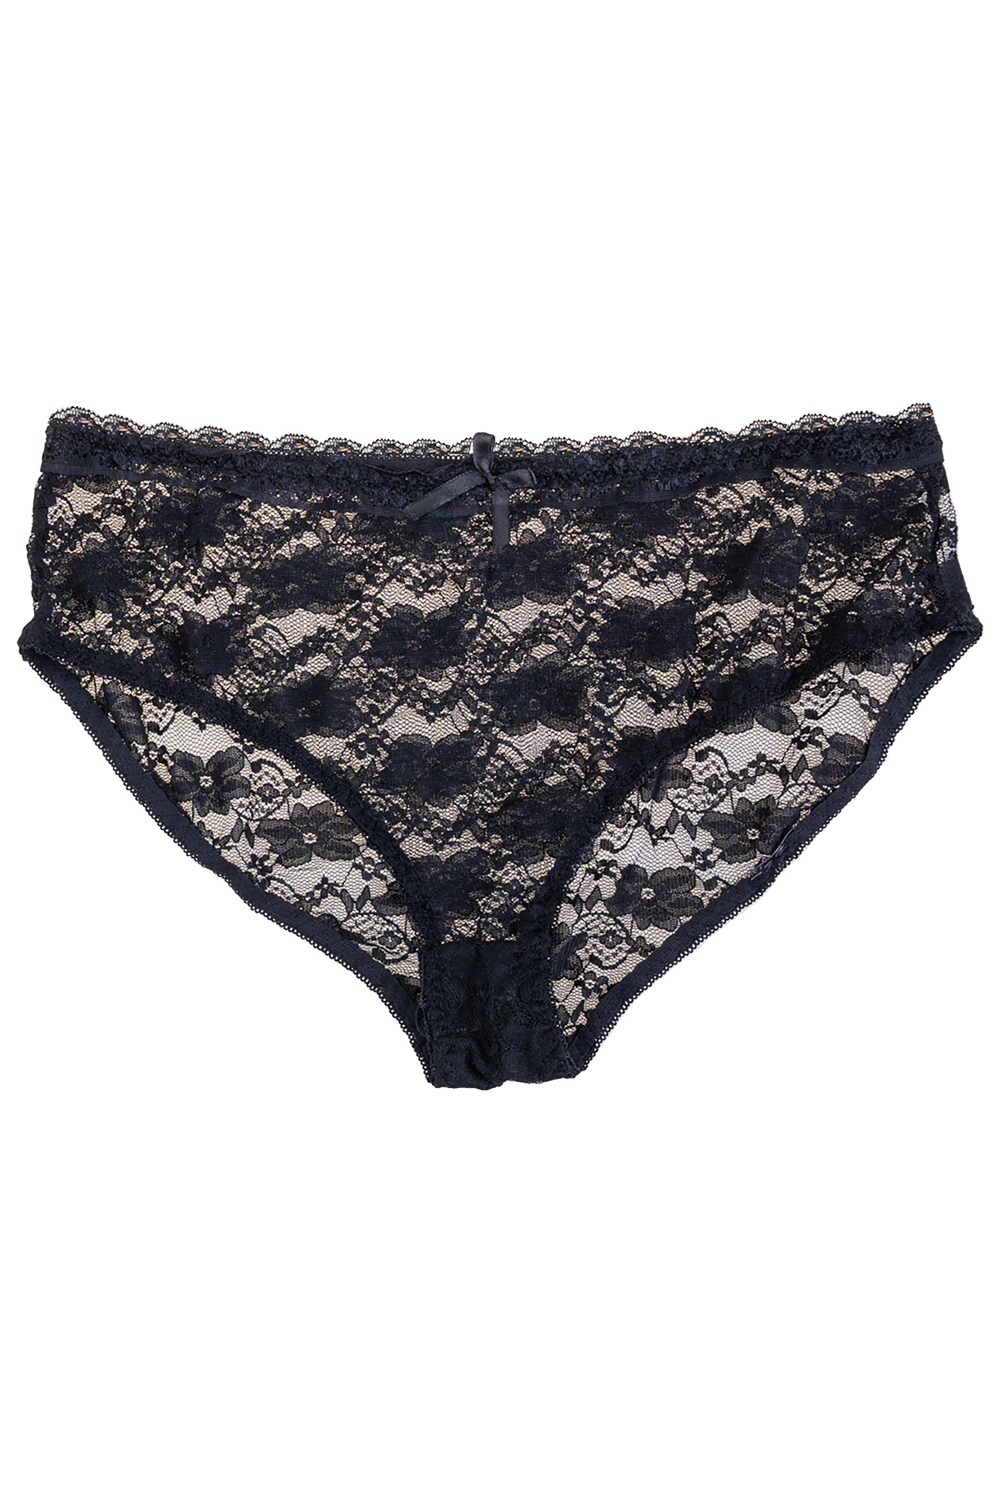 Plunging lace push-up demi bra set, black - Plus Size. Colour: black. Size:  38d/8